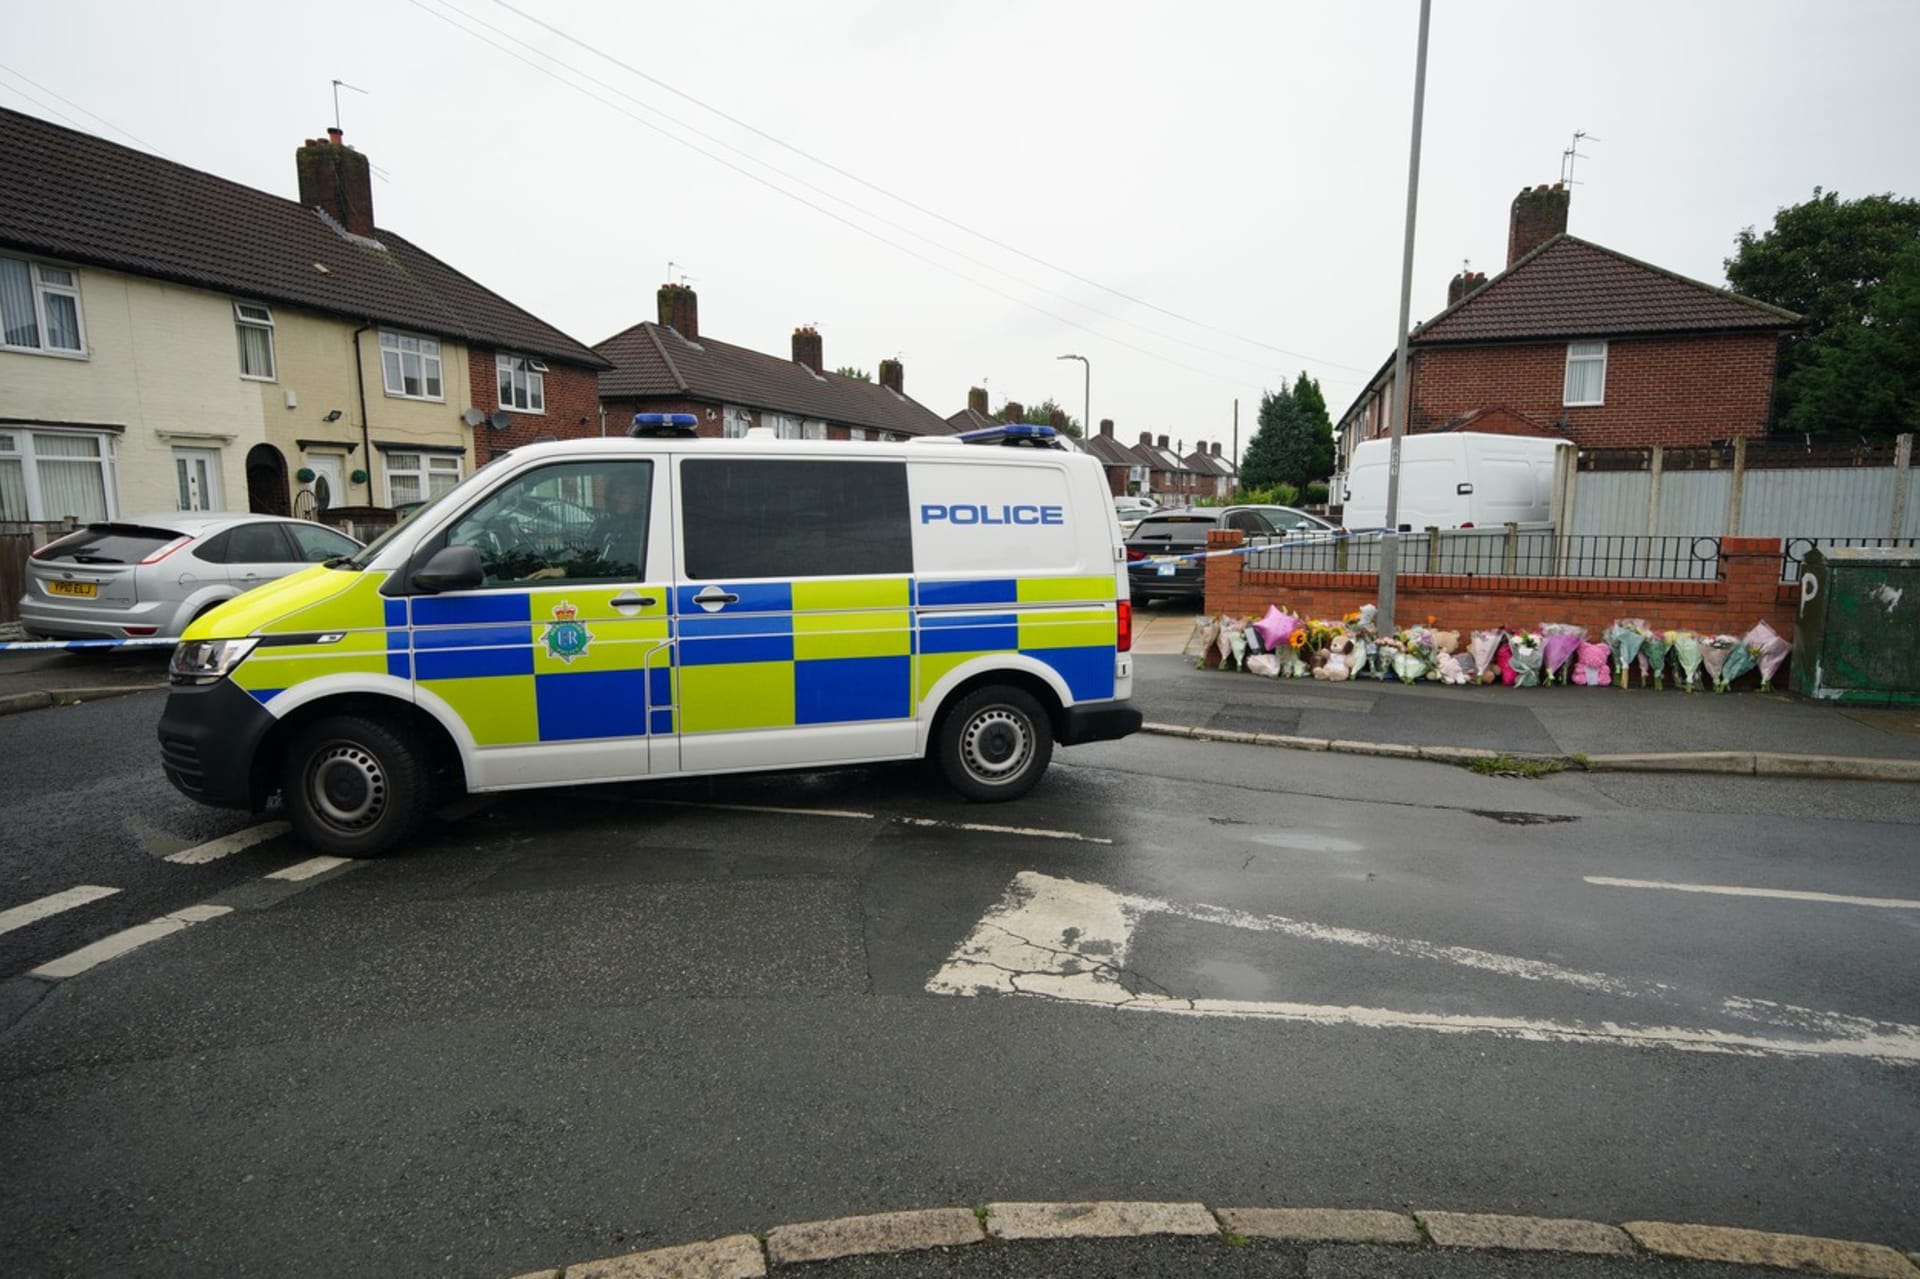 Velká Británie je v šoku ze smrti 9leté holčičky, kterou v liverpoolském domě zabil neznámý střelec.